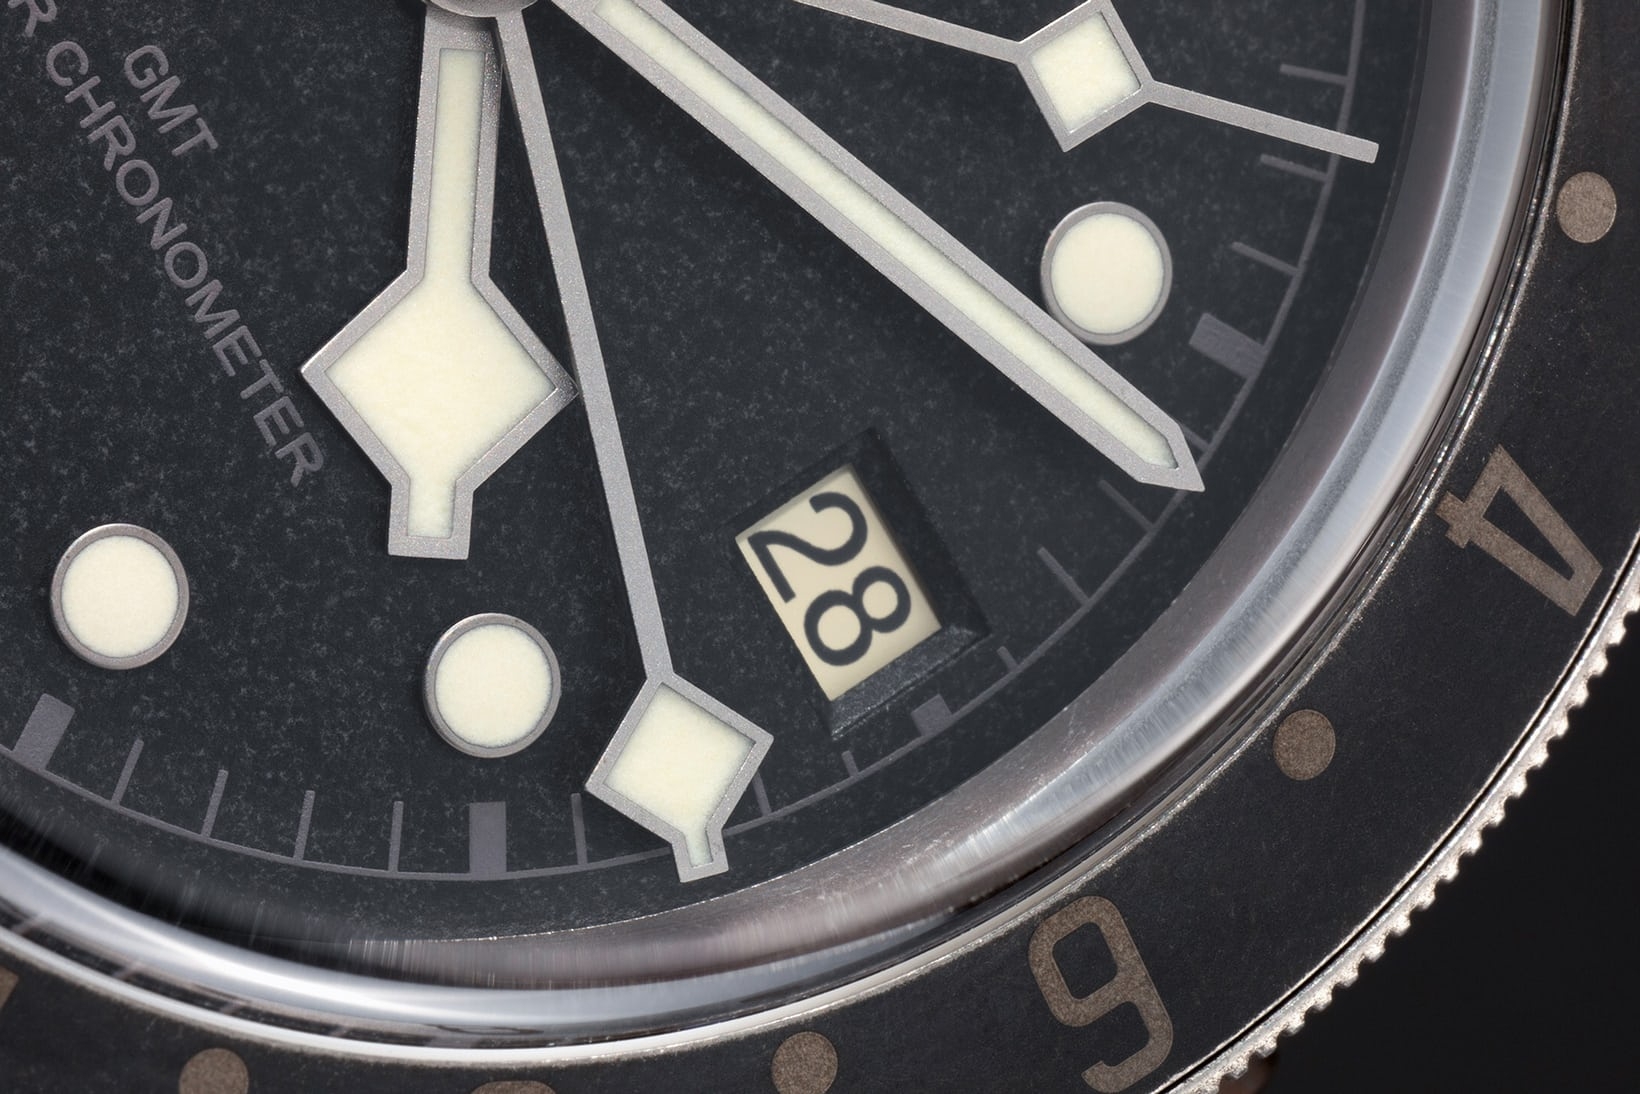 Đồng hồ Tudor Black Bay GMT One Only Watch 2021 được bán với giá gấp gần 100 lần giá ước tính 